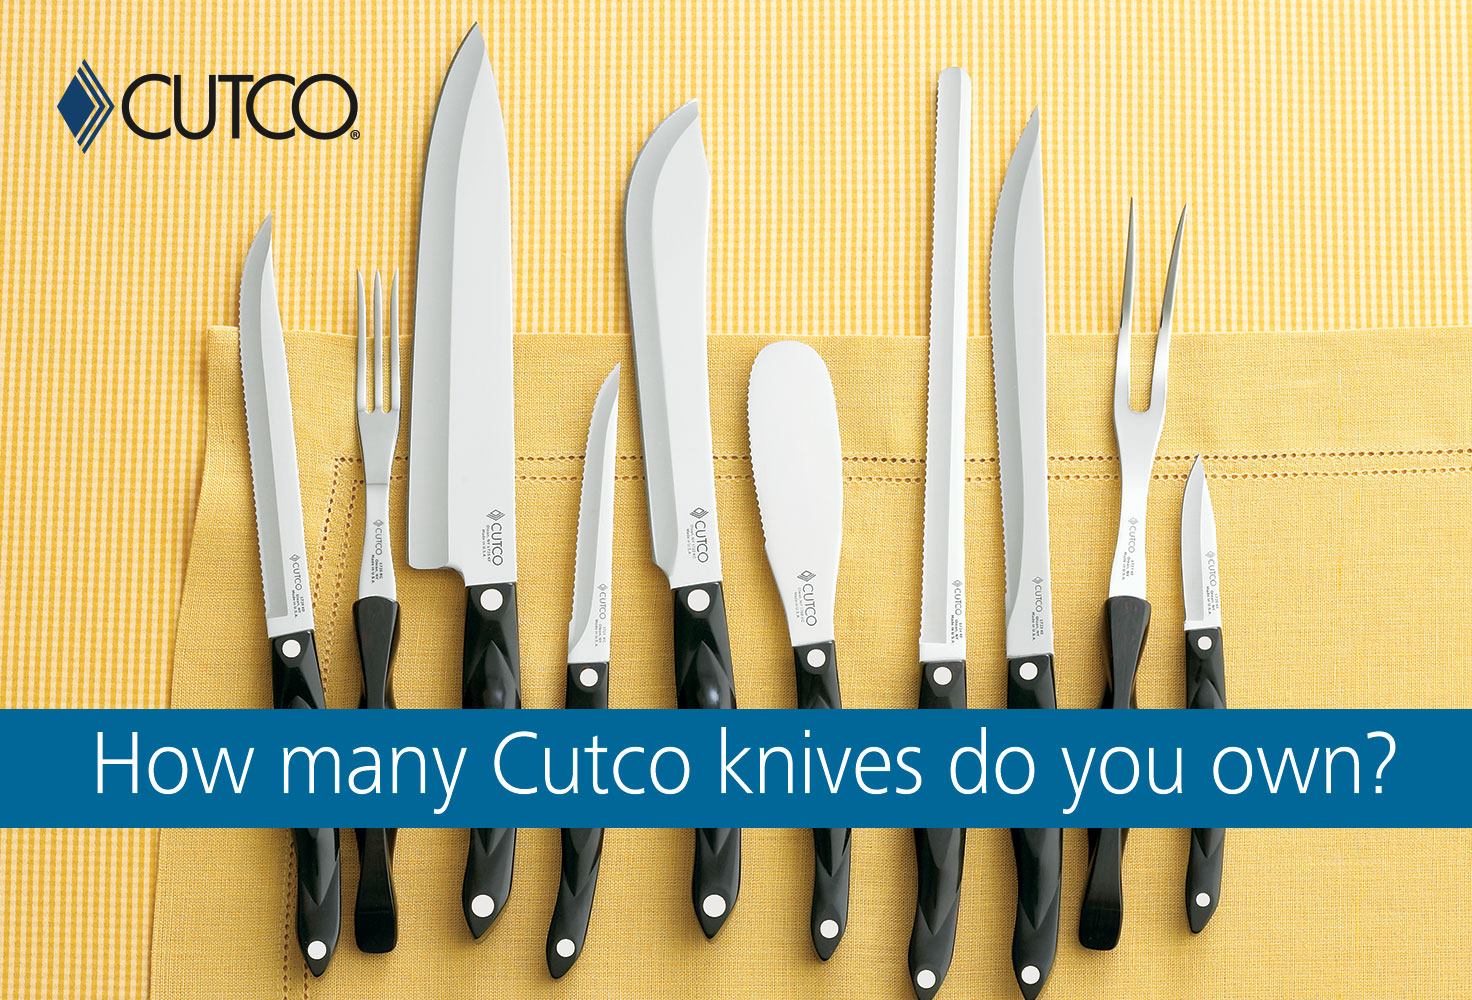 Cutco Cutlery at Costco Perimeter